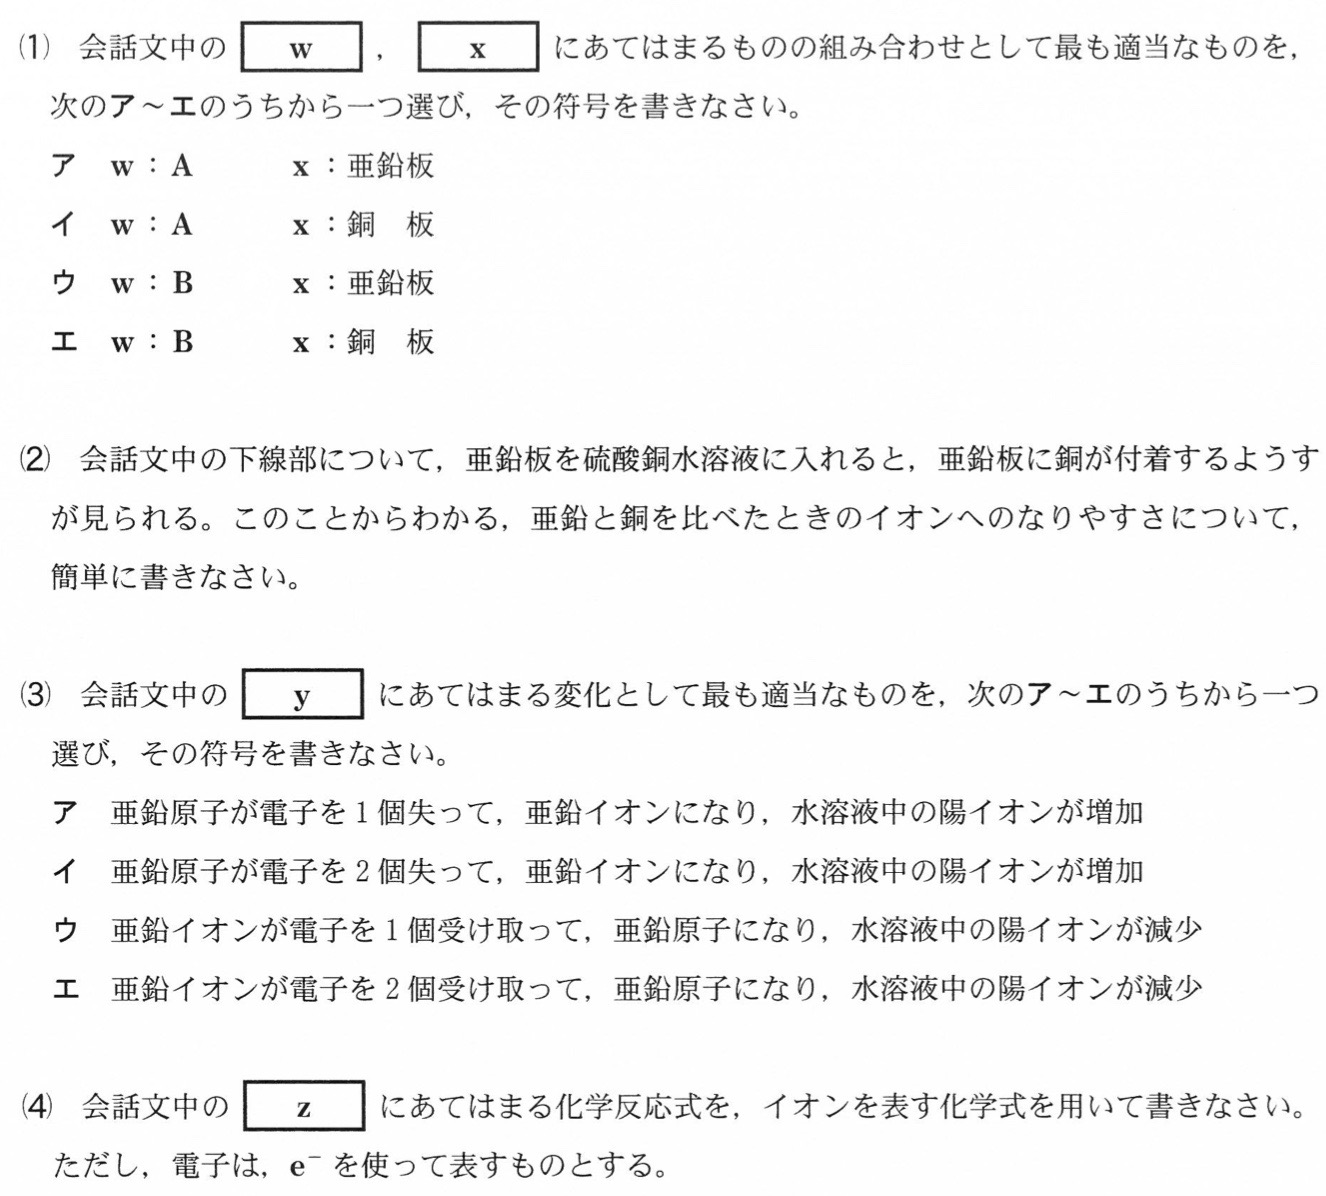 千葉県公立高校入試理科2022年(令和4年)過去問題